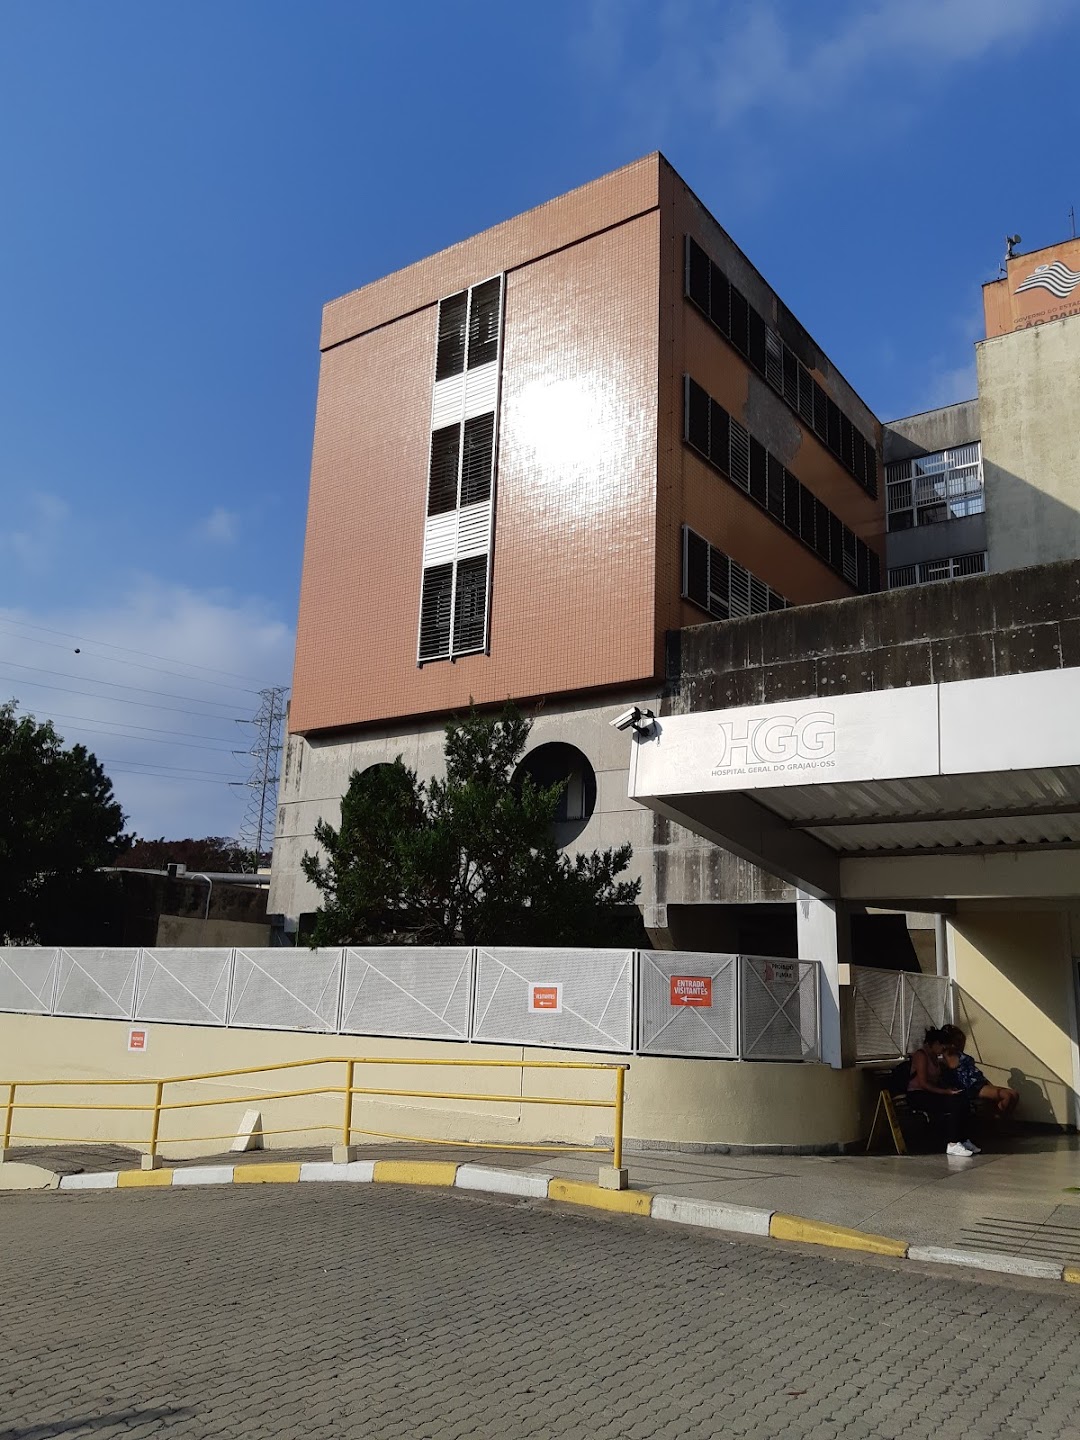 Hospital Geral do Grajaú